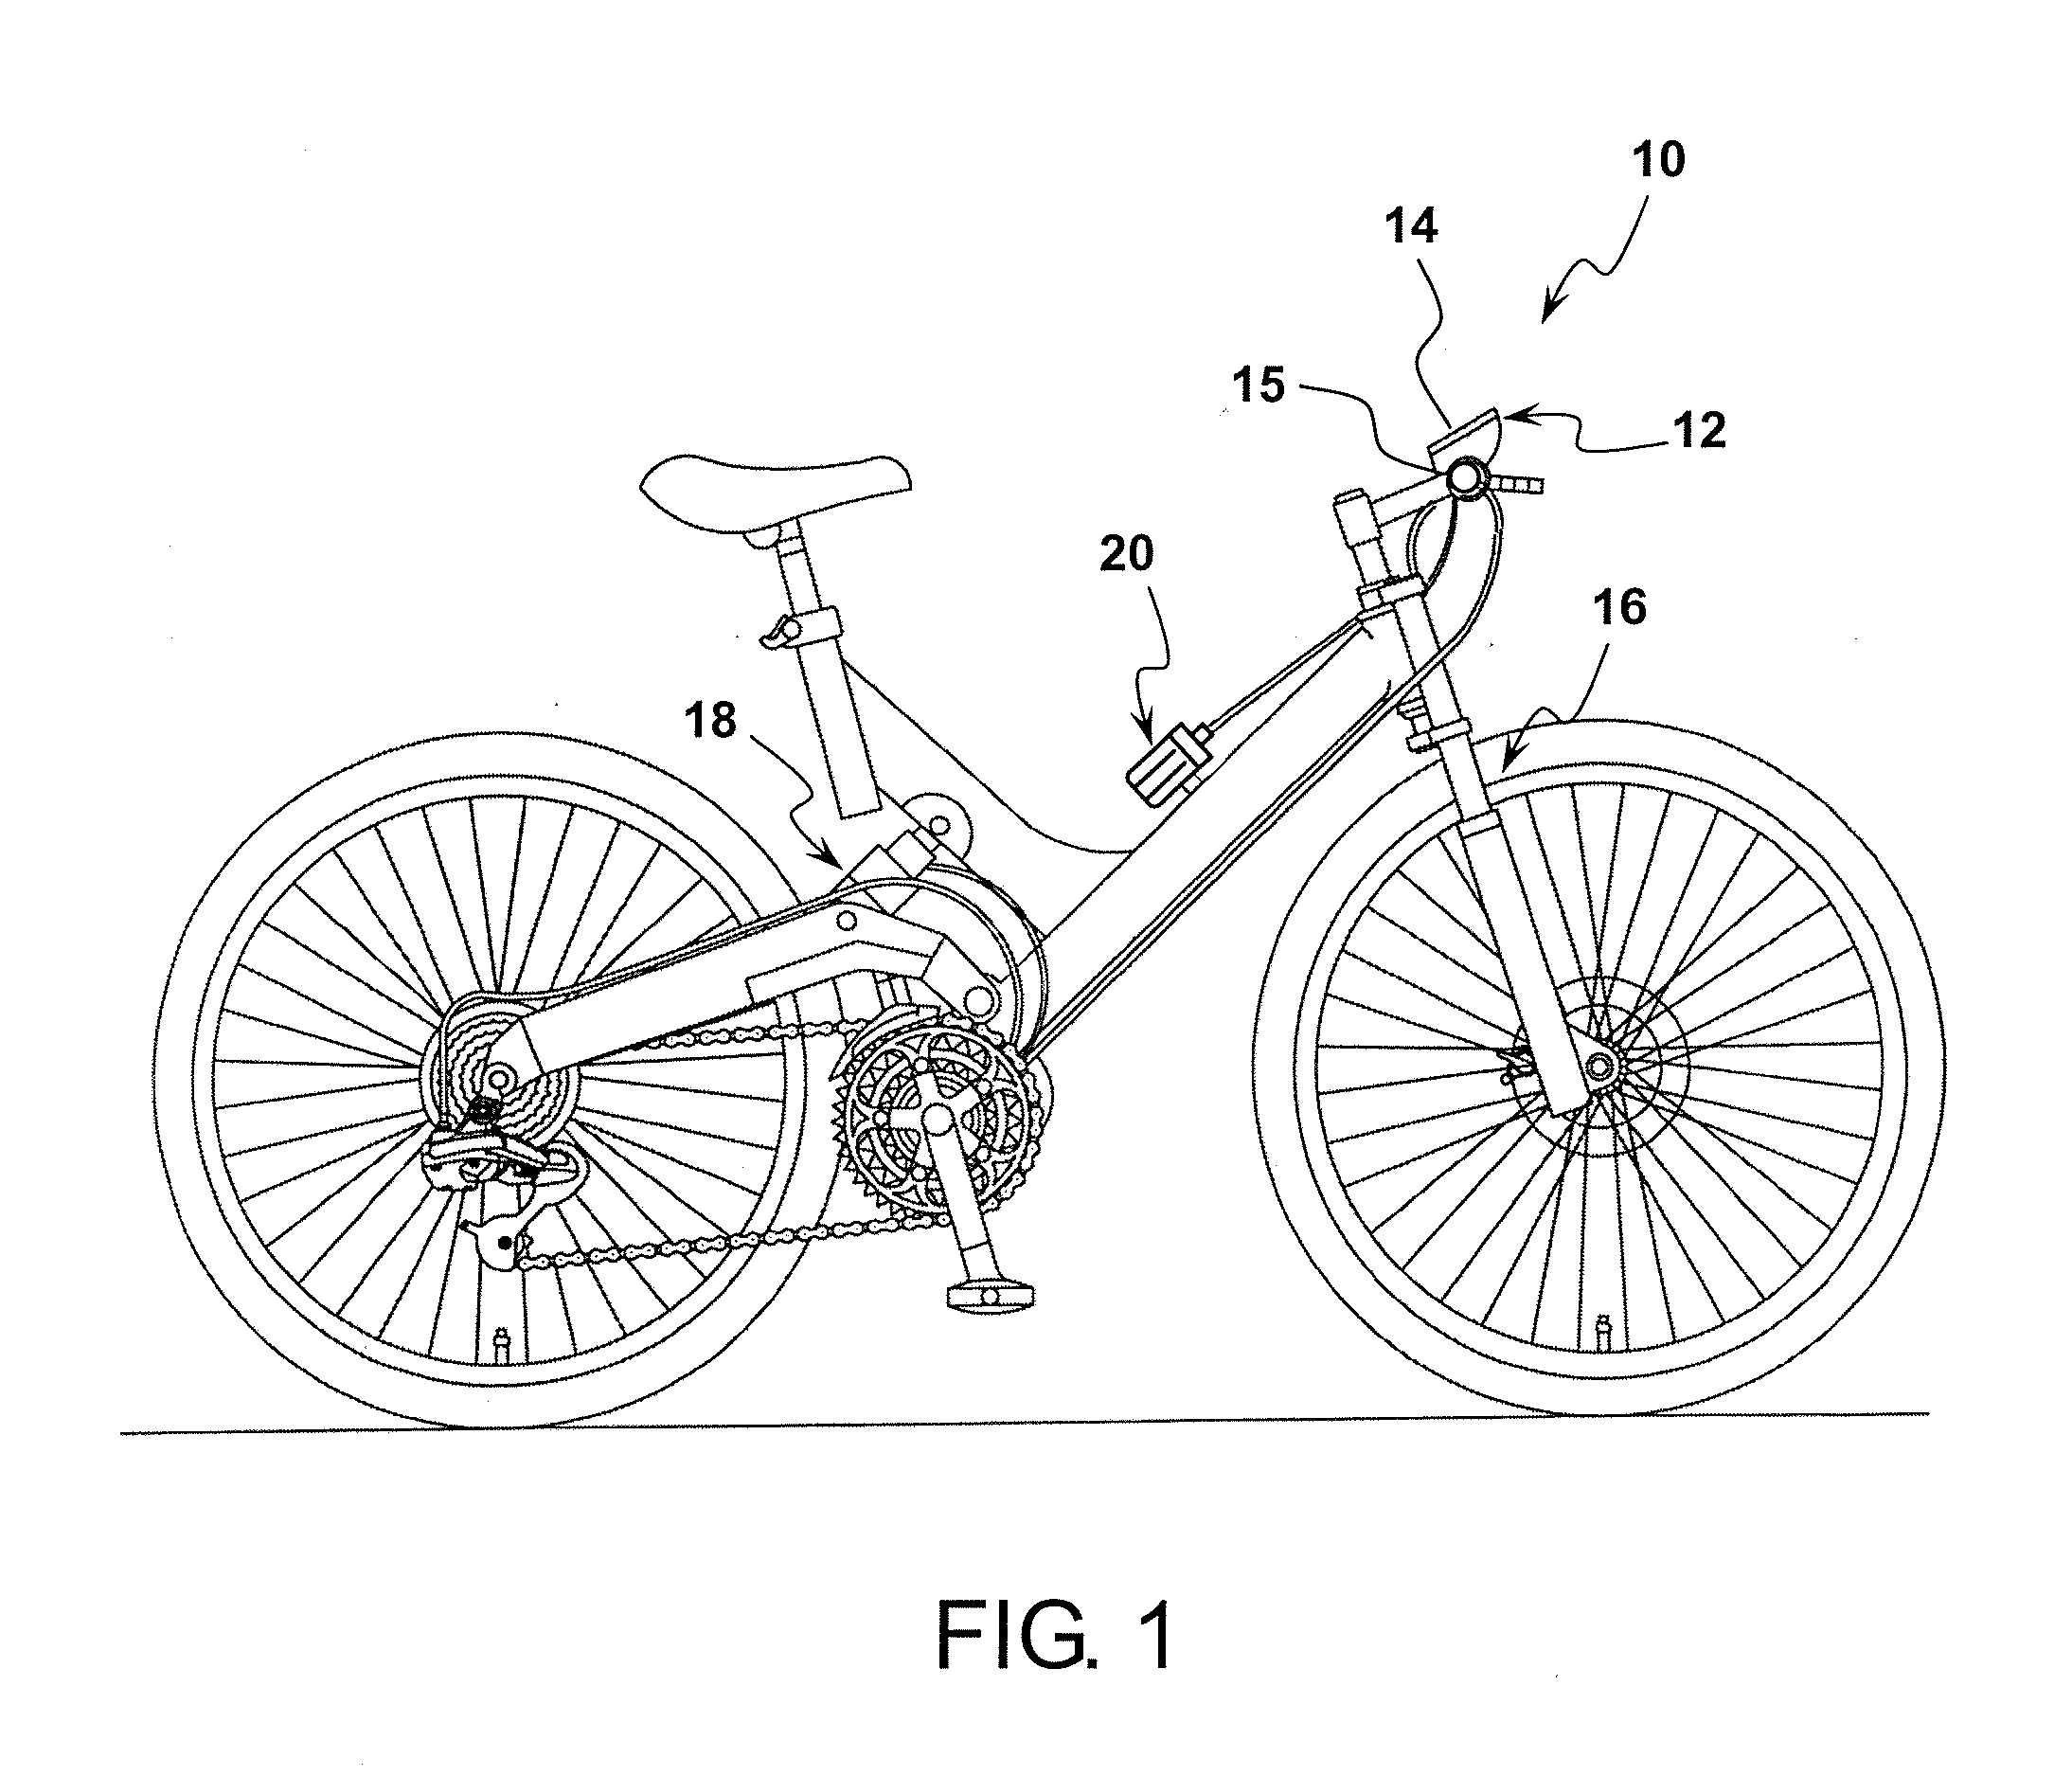 Bicycle suspension control apparatus